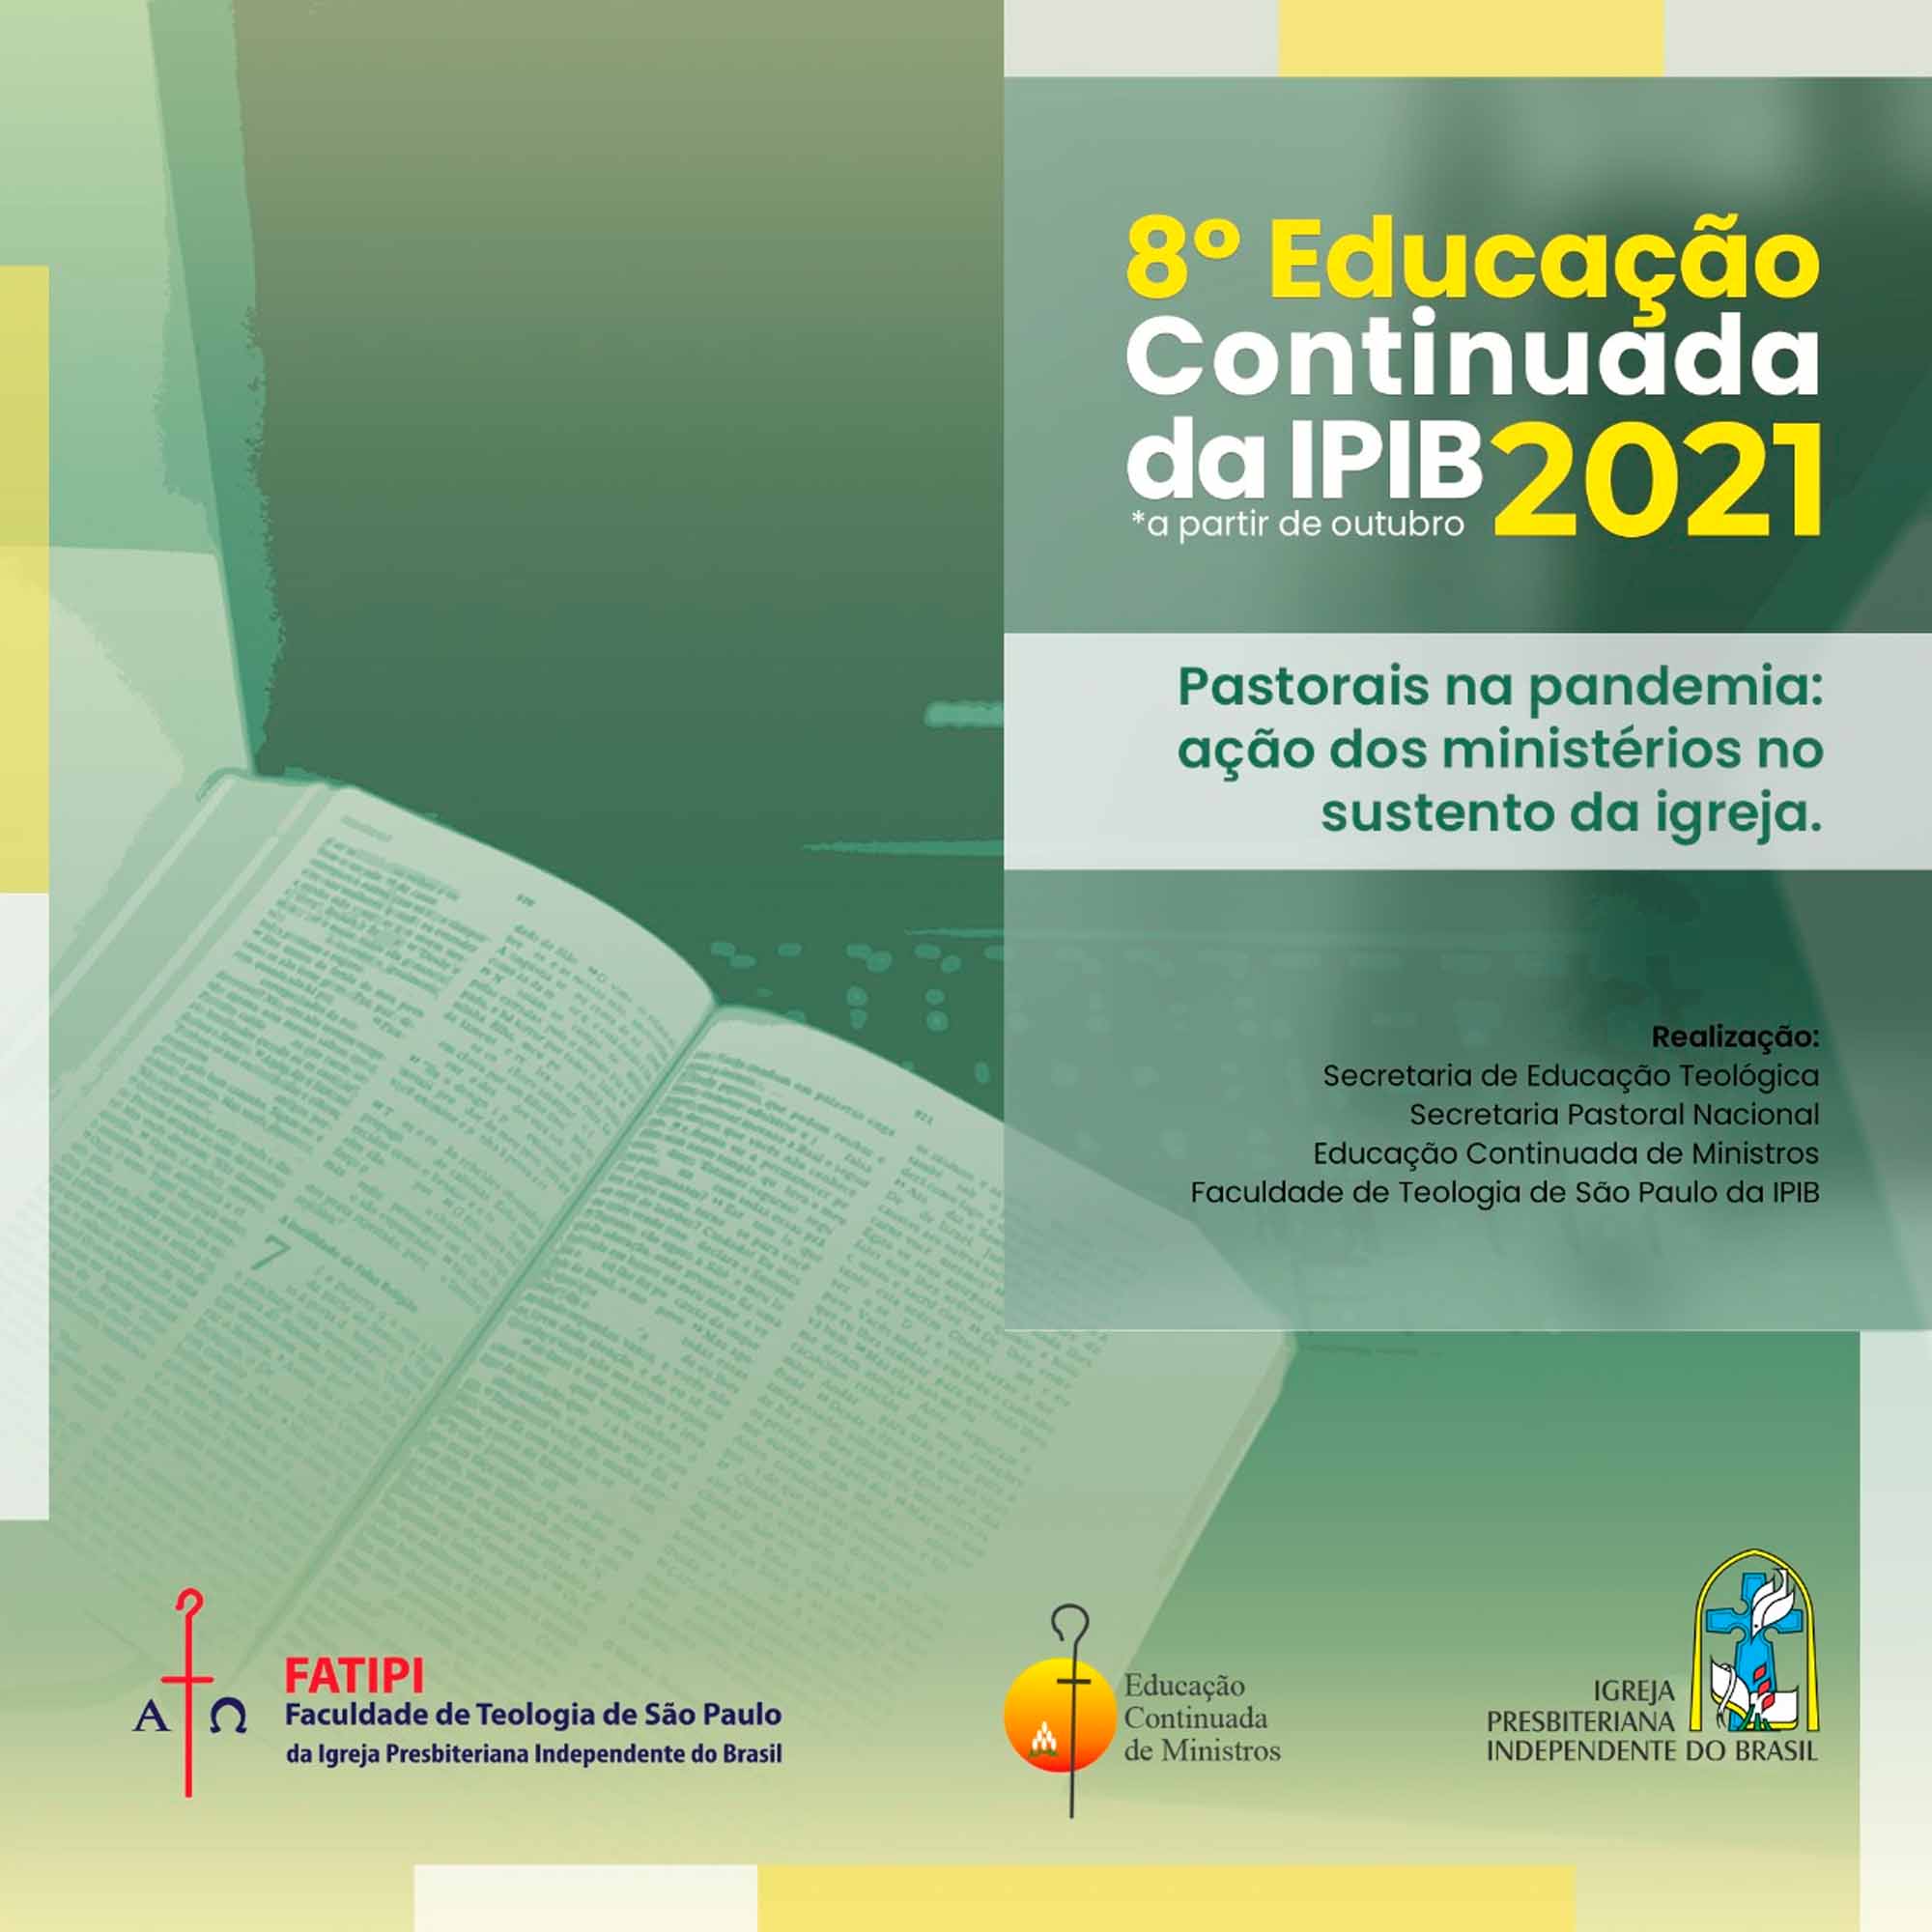 8ª Educação Continuada da IPI do Brasil